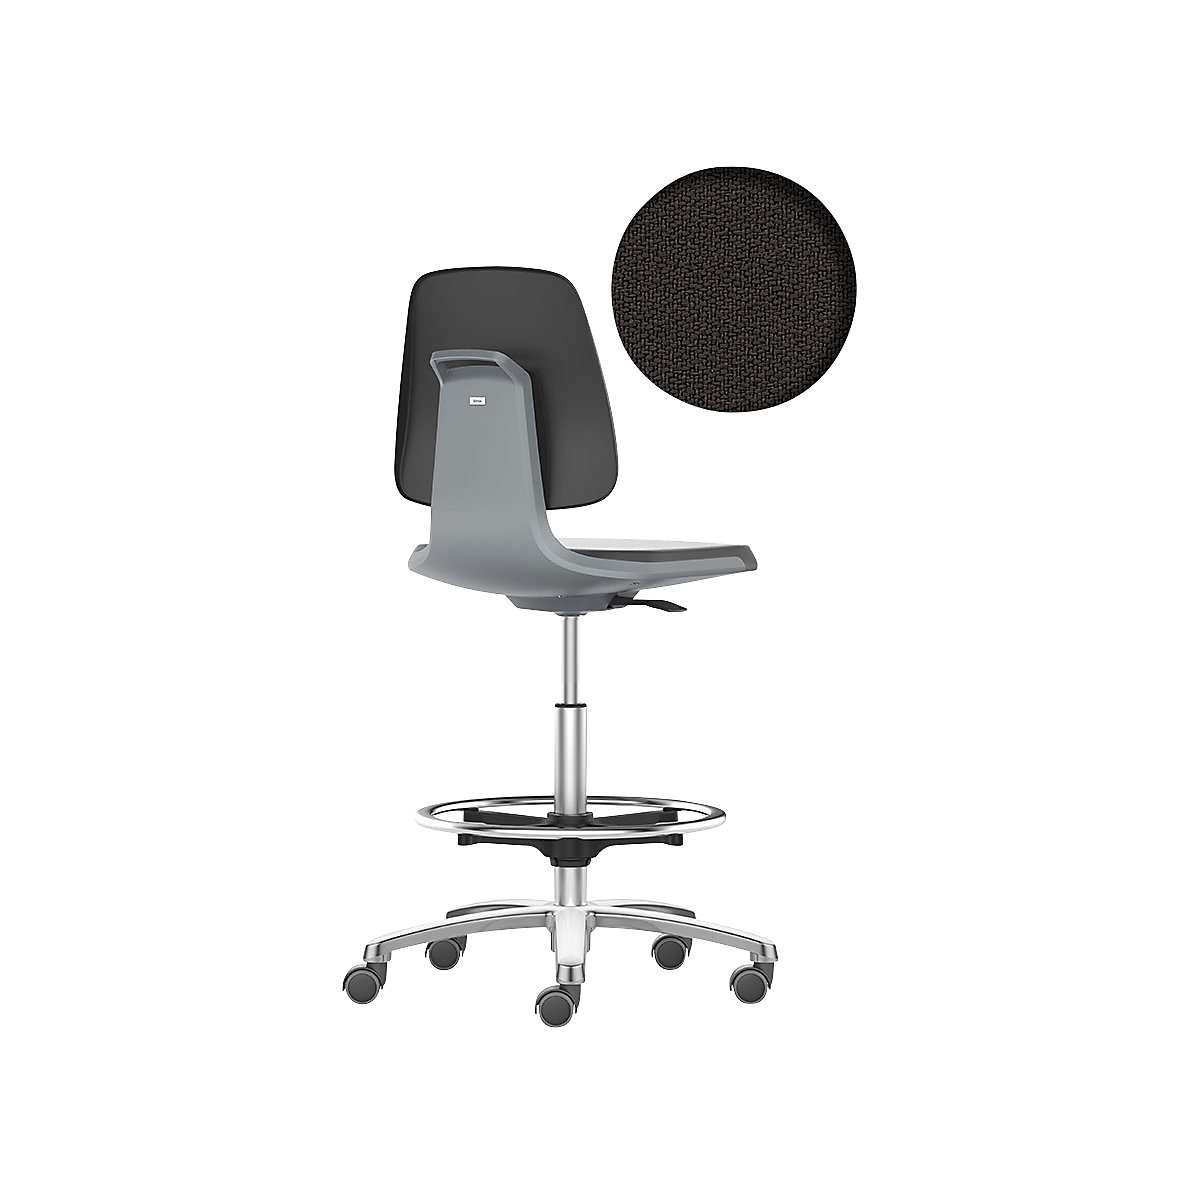 bimos – Siège d'atelier LABSIT, siège haut avec roulettes blocables et repose-pieds circulaire, assise à habillage tissu, anthracite